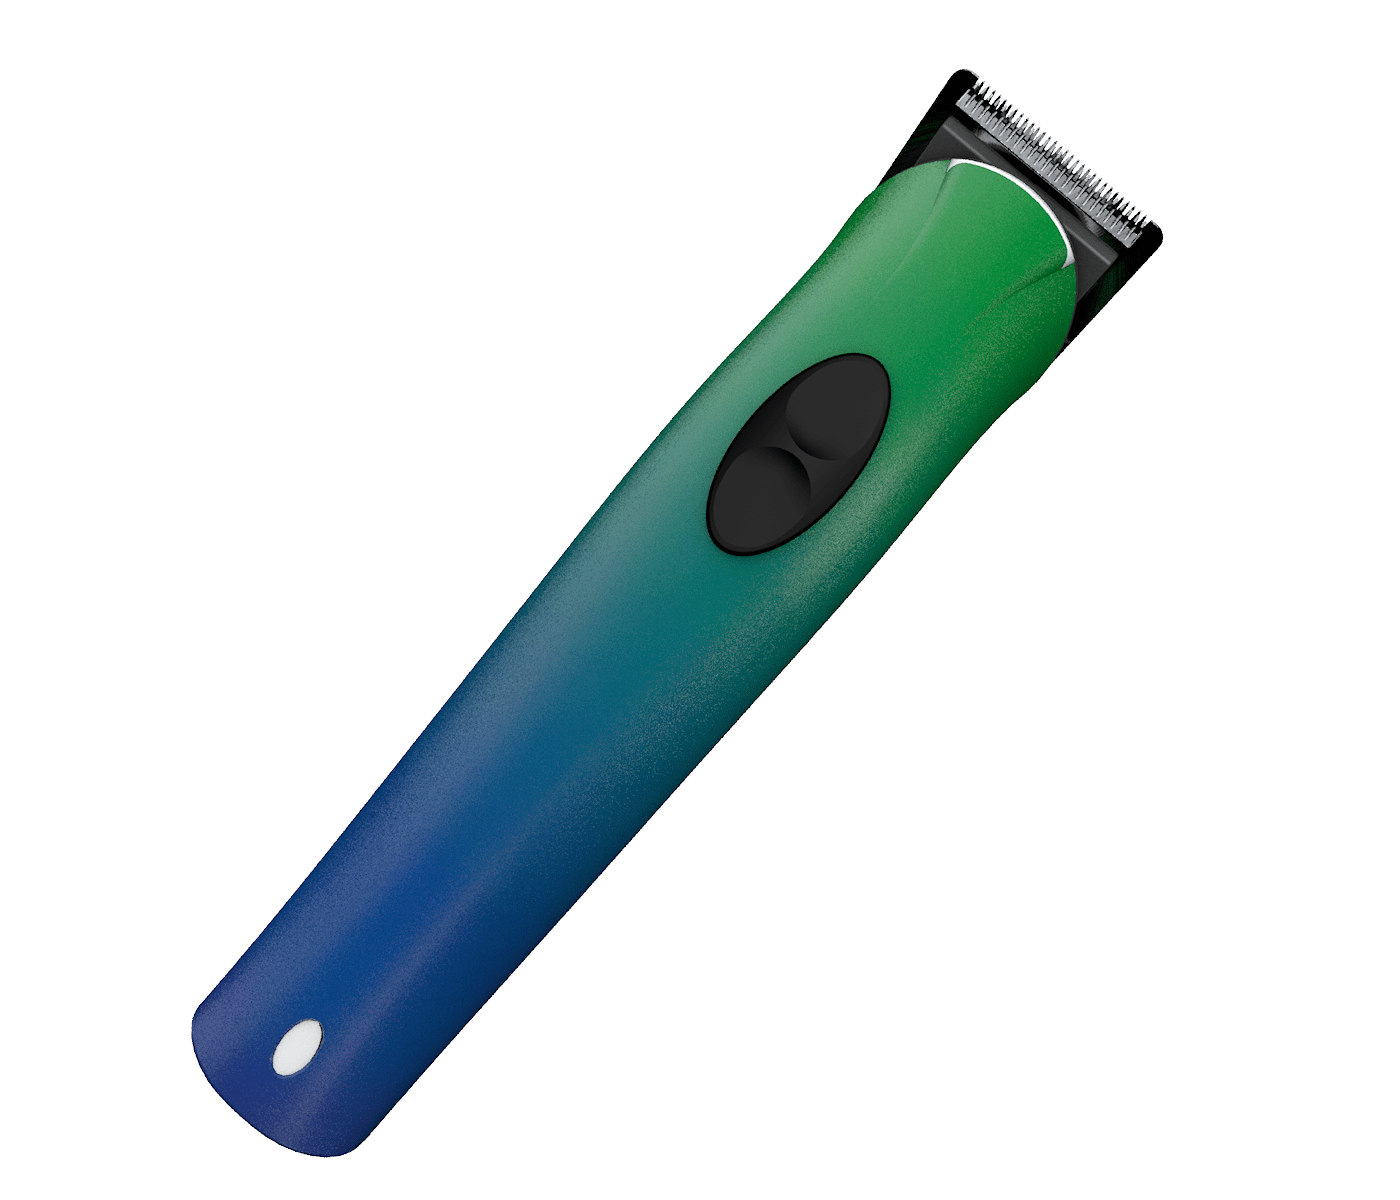 Haartrimmer - OT 11 B Hair Trimmer von EXONDA - blau grün